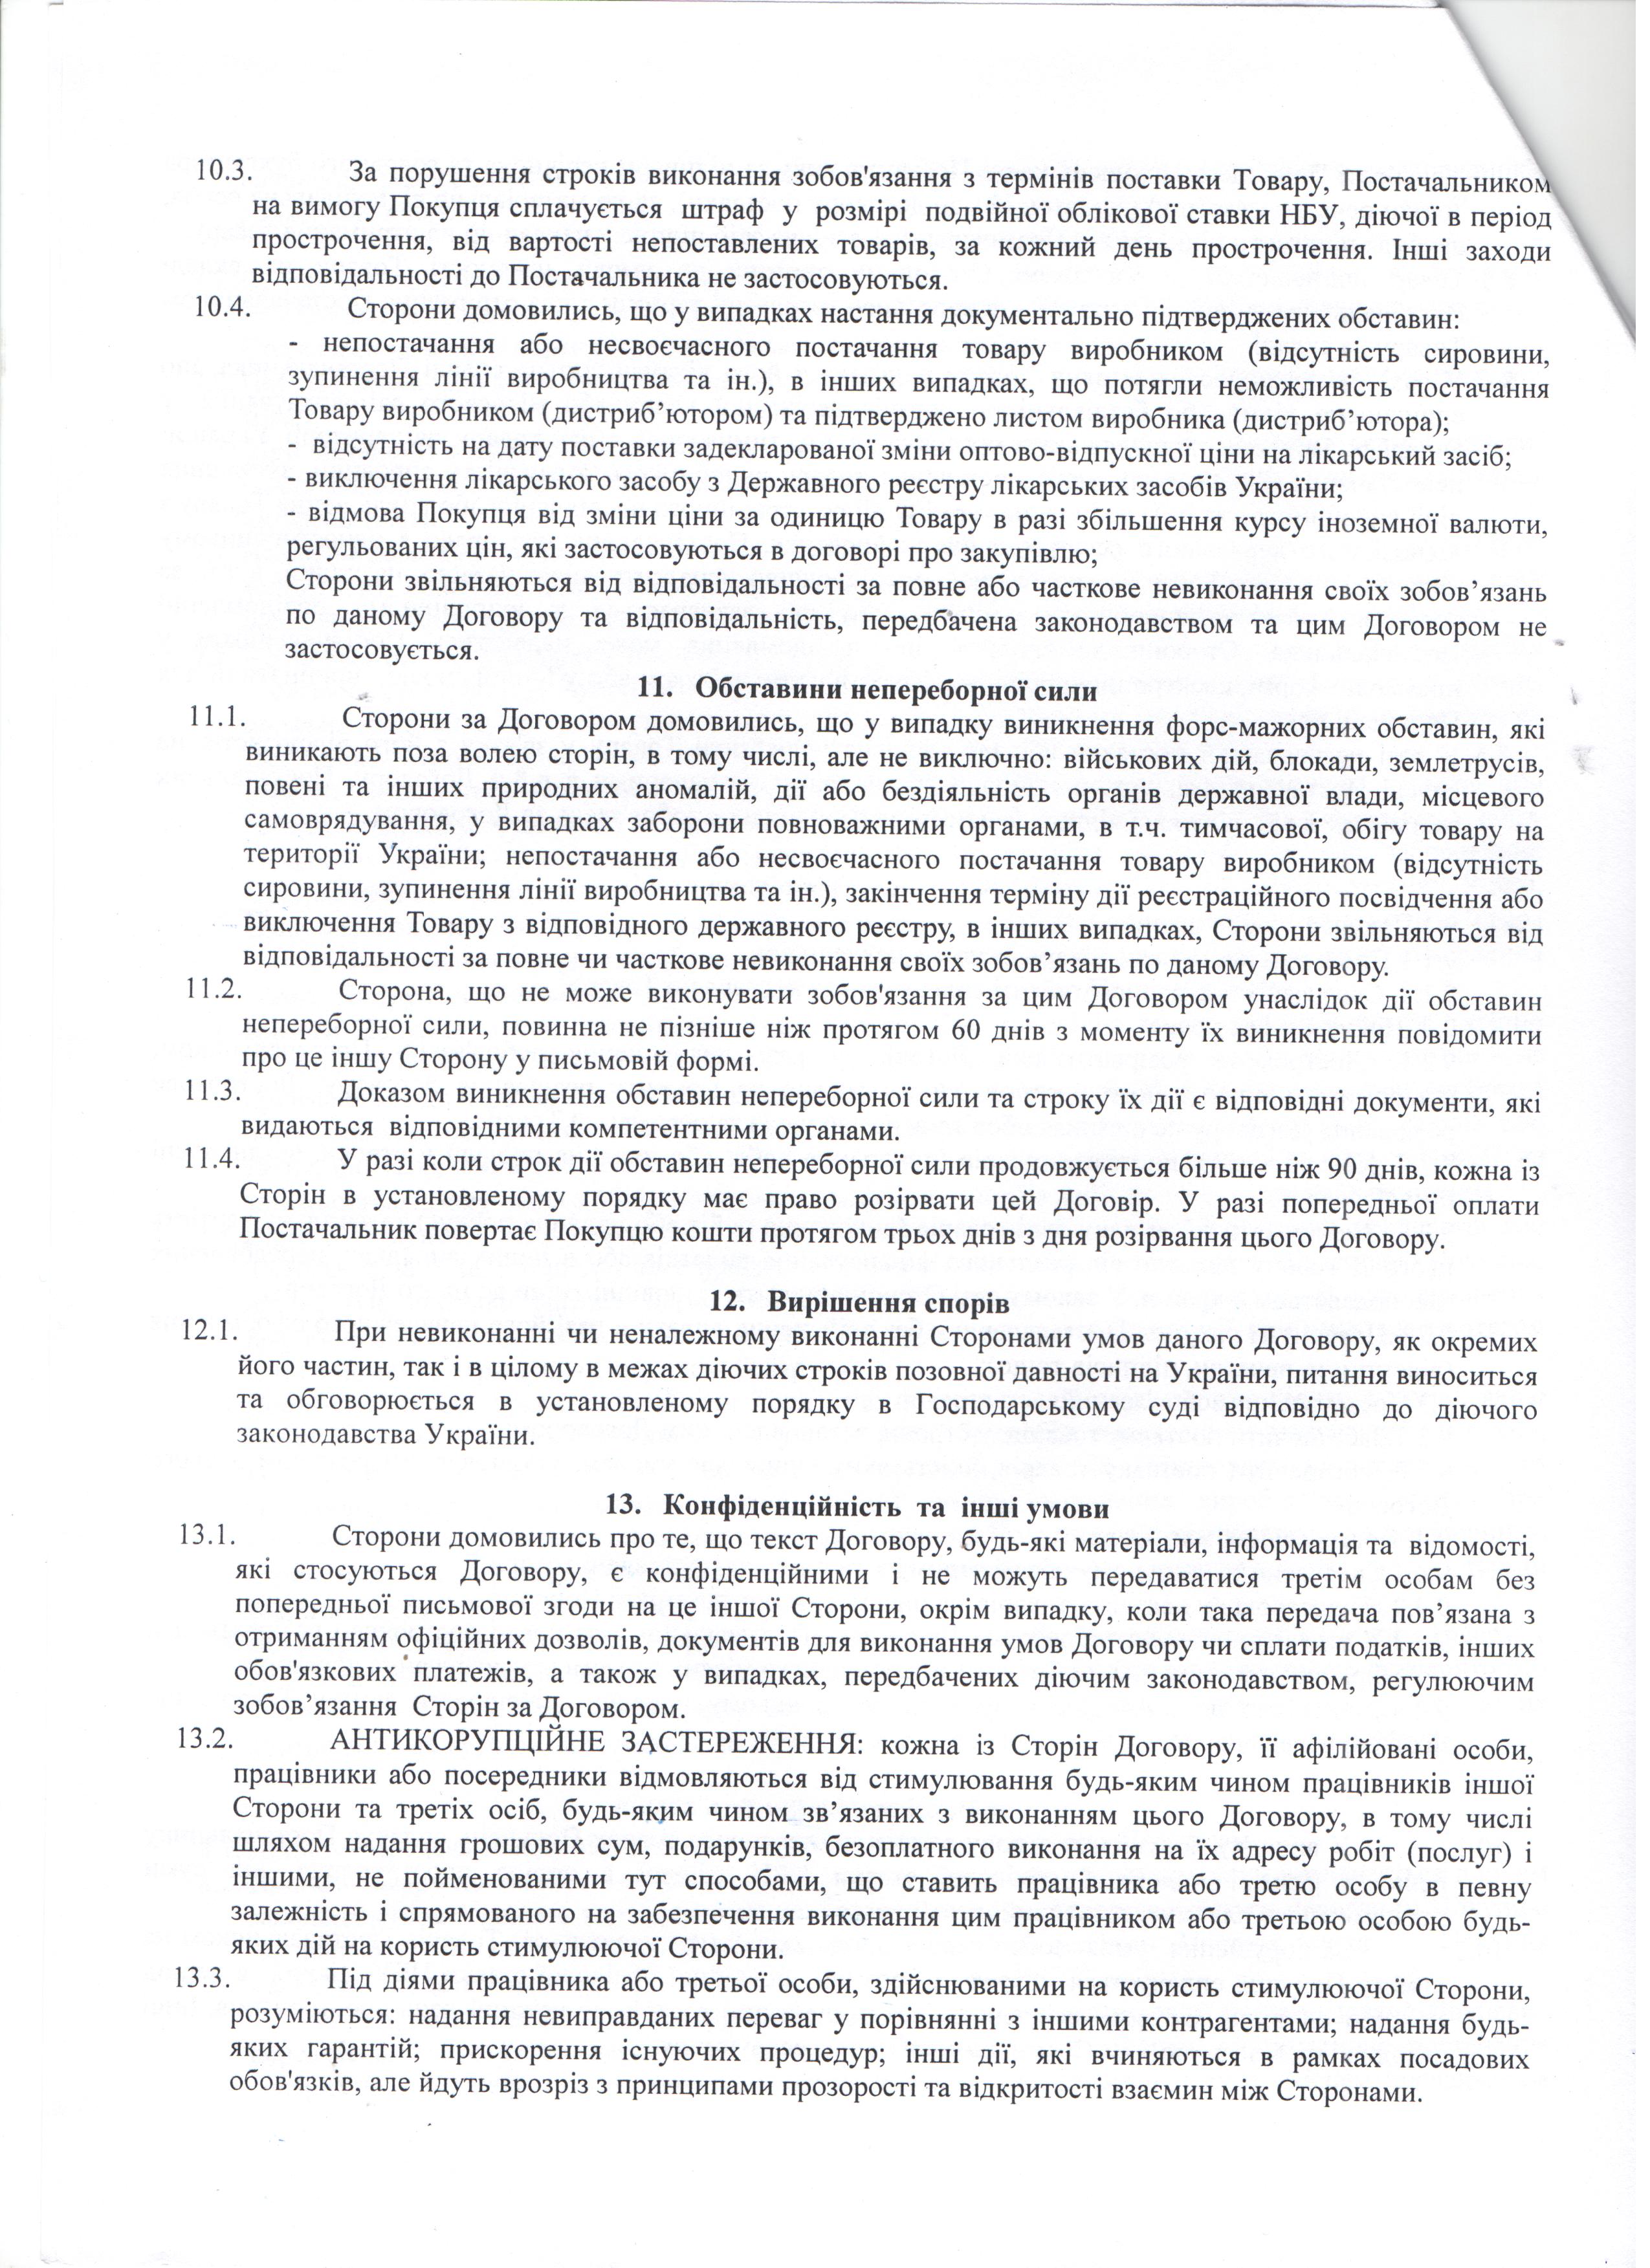 Договір №210 від 10.12.2020 р.